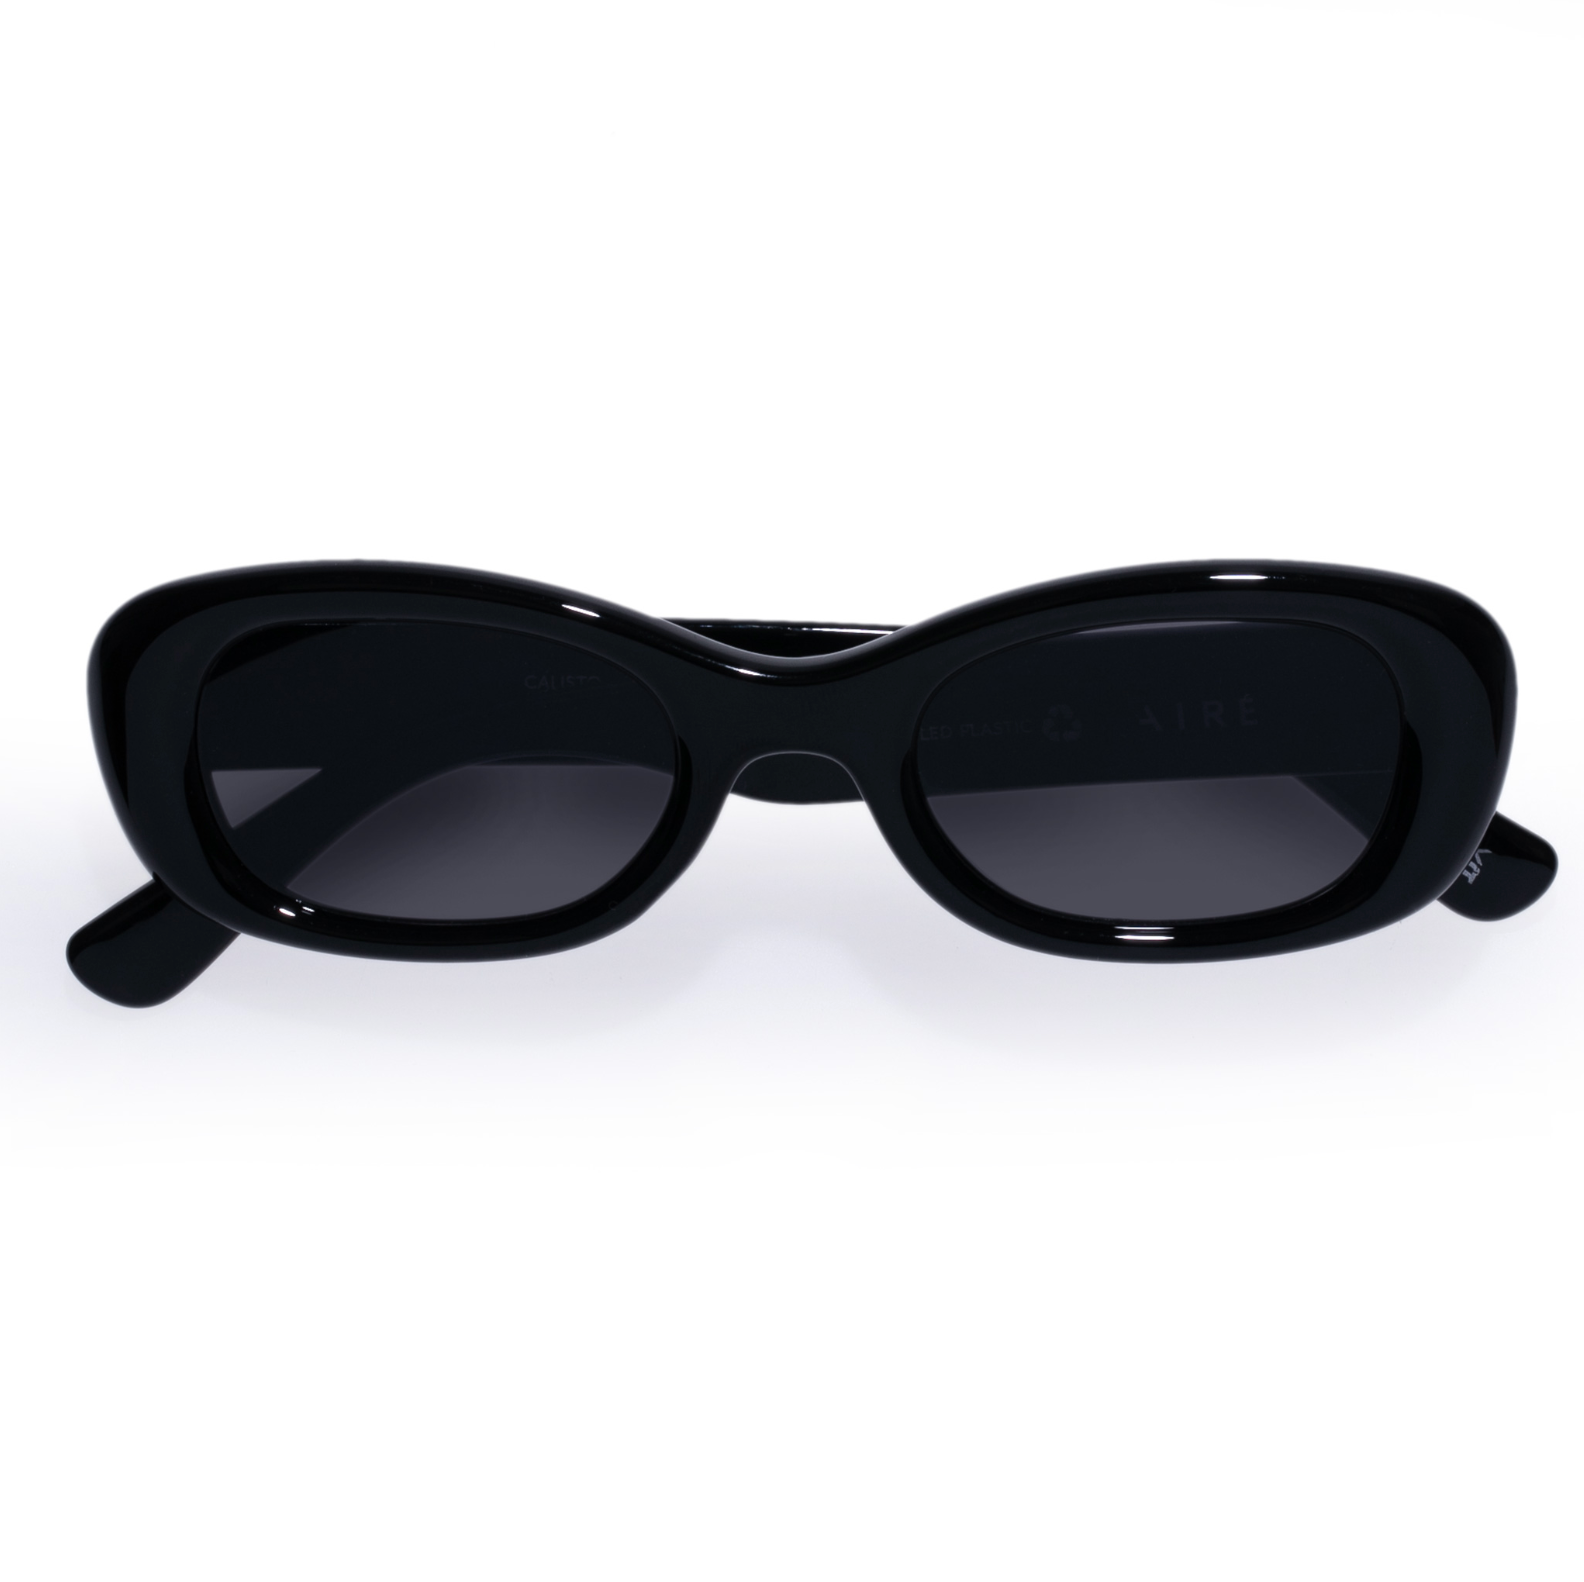 Calisto Sunglasses